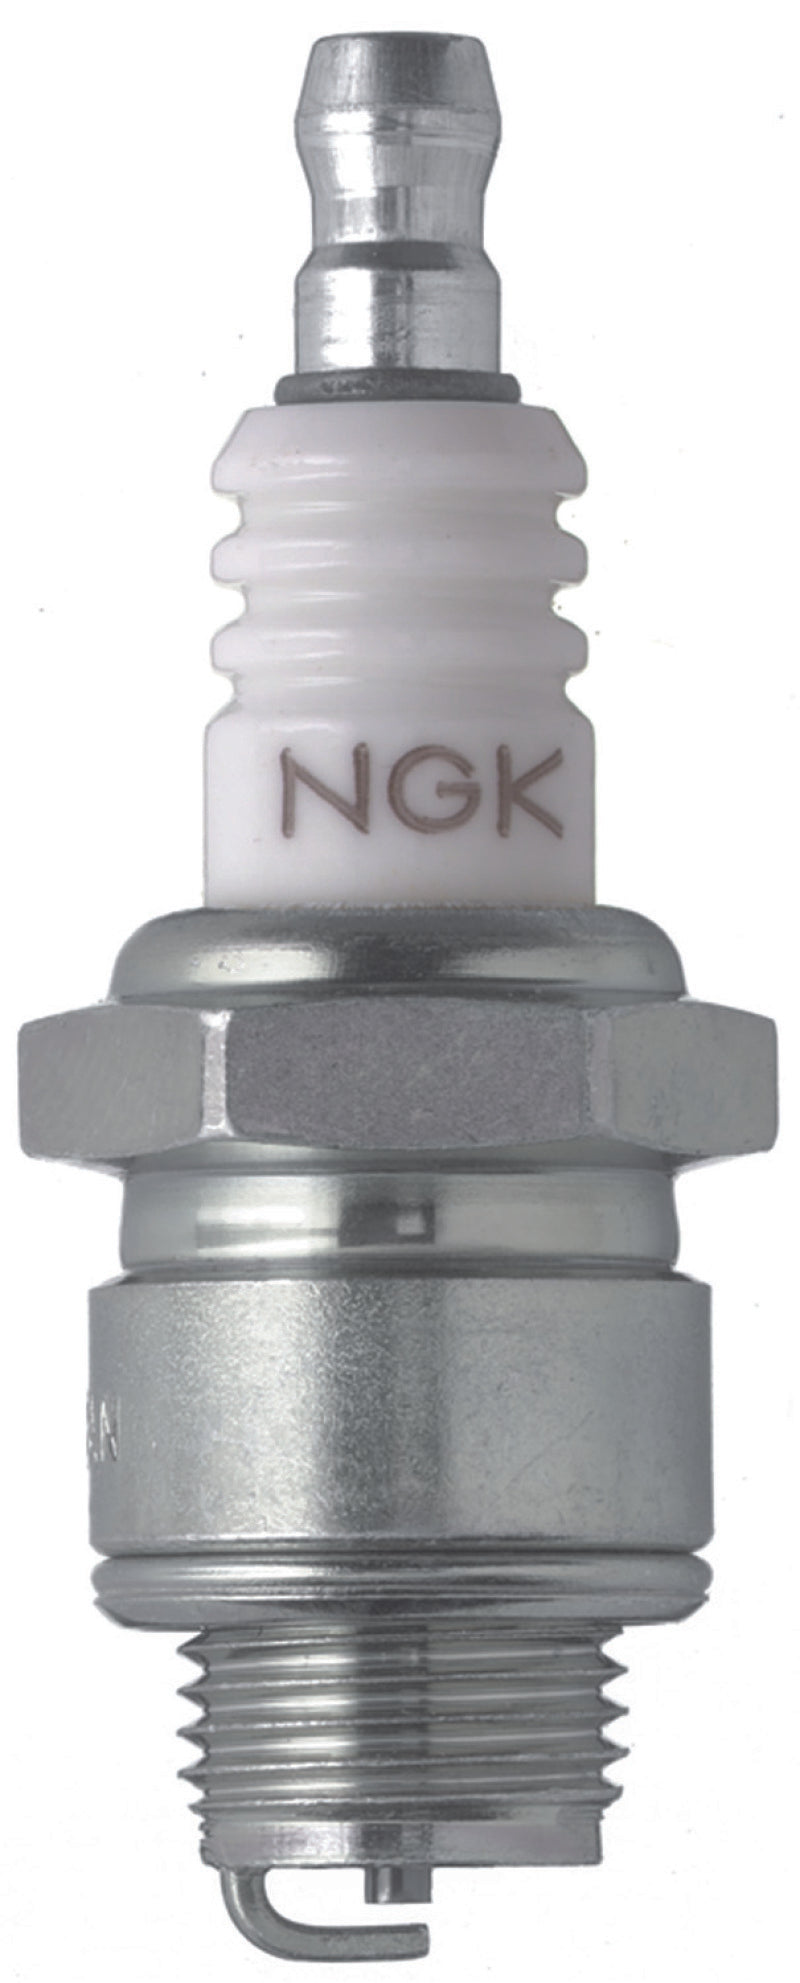 NGK BLYB Spark Plug Box of 6 (BR4-LM)